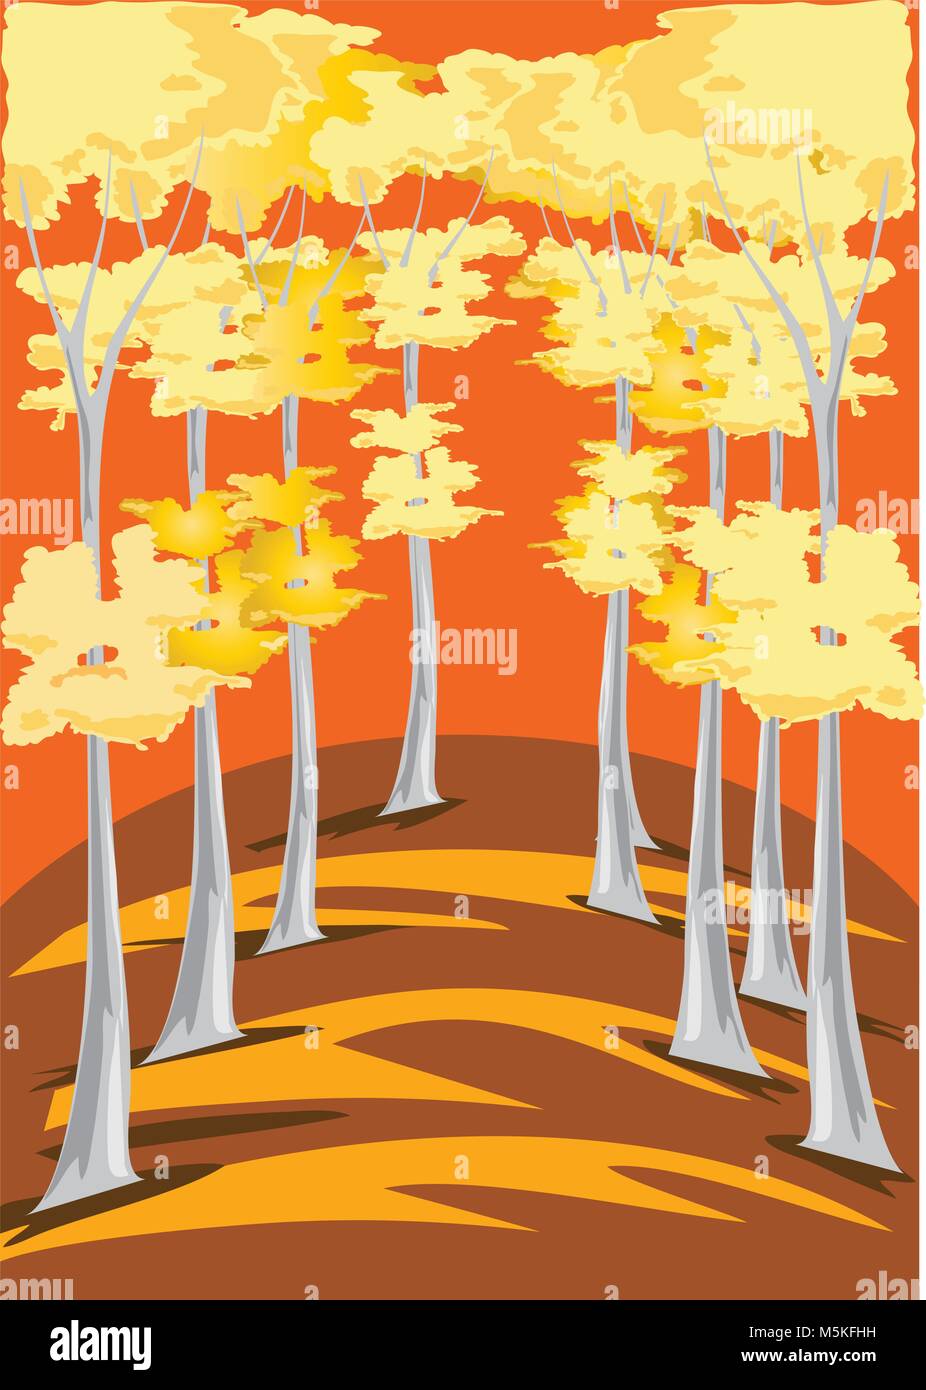 Una rappresentazione stilizzata di esili alberi con foglie d'oro. Illustrazione Vettoriale